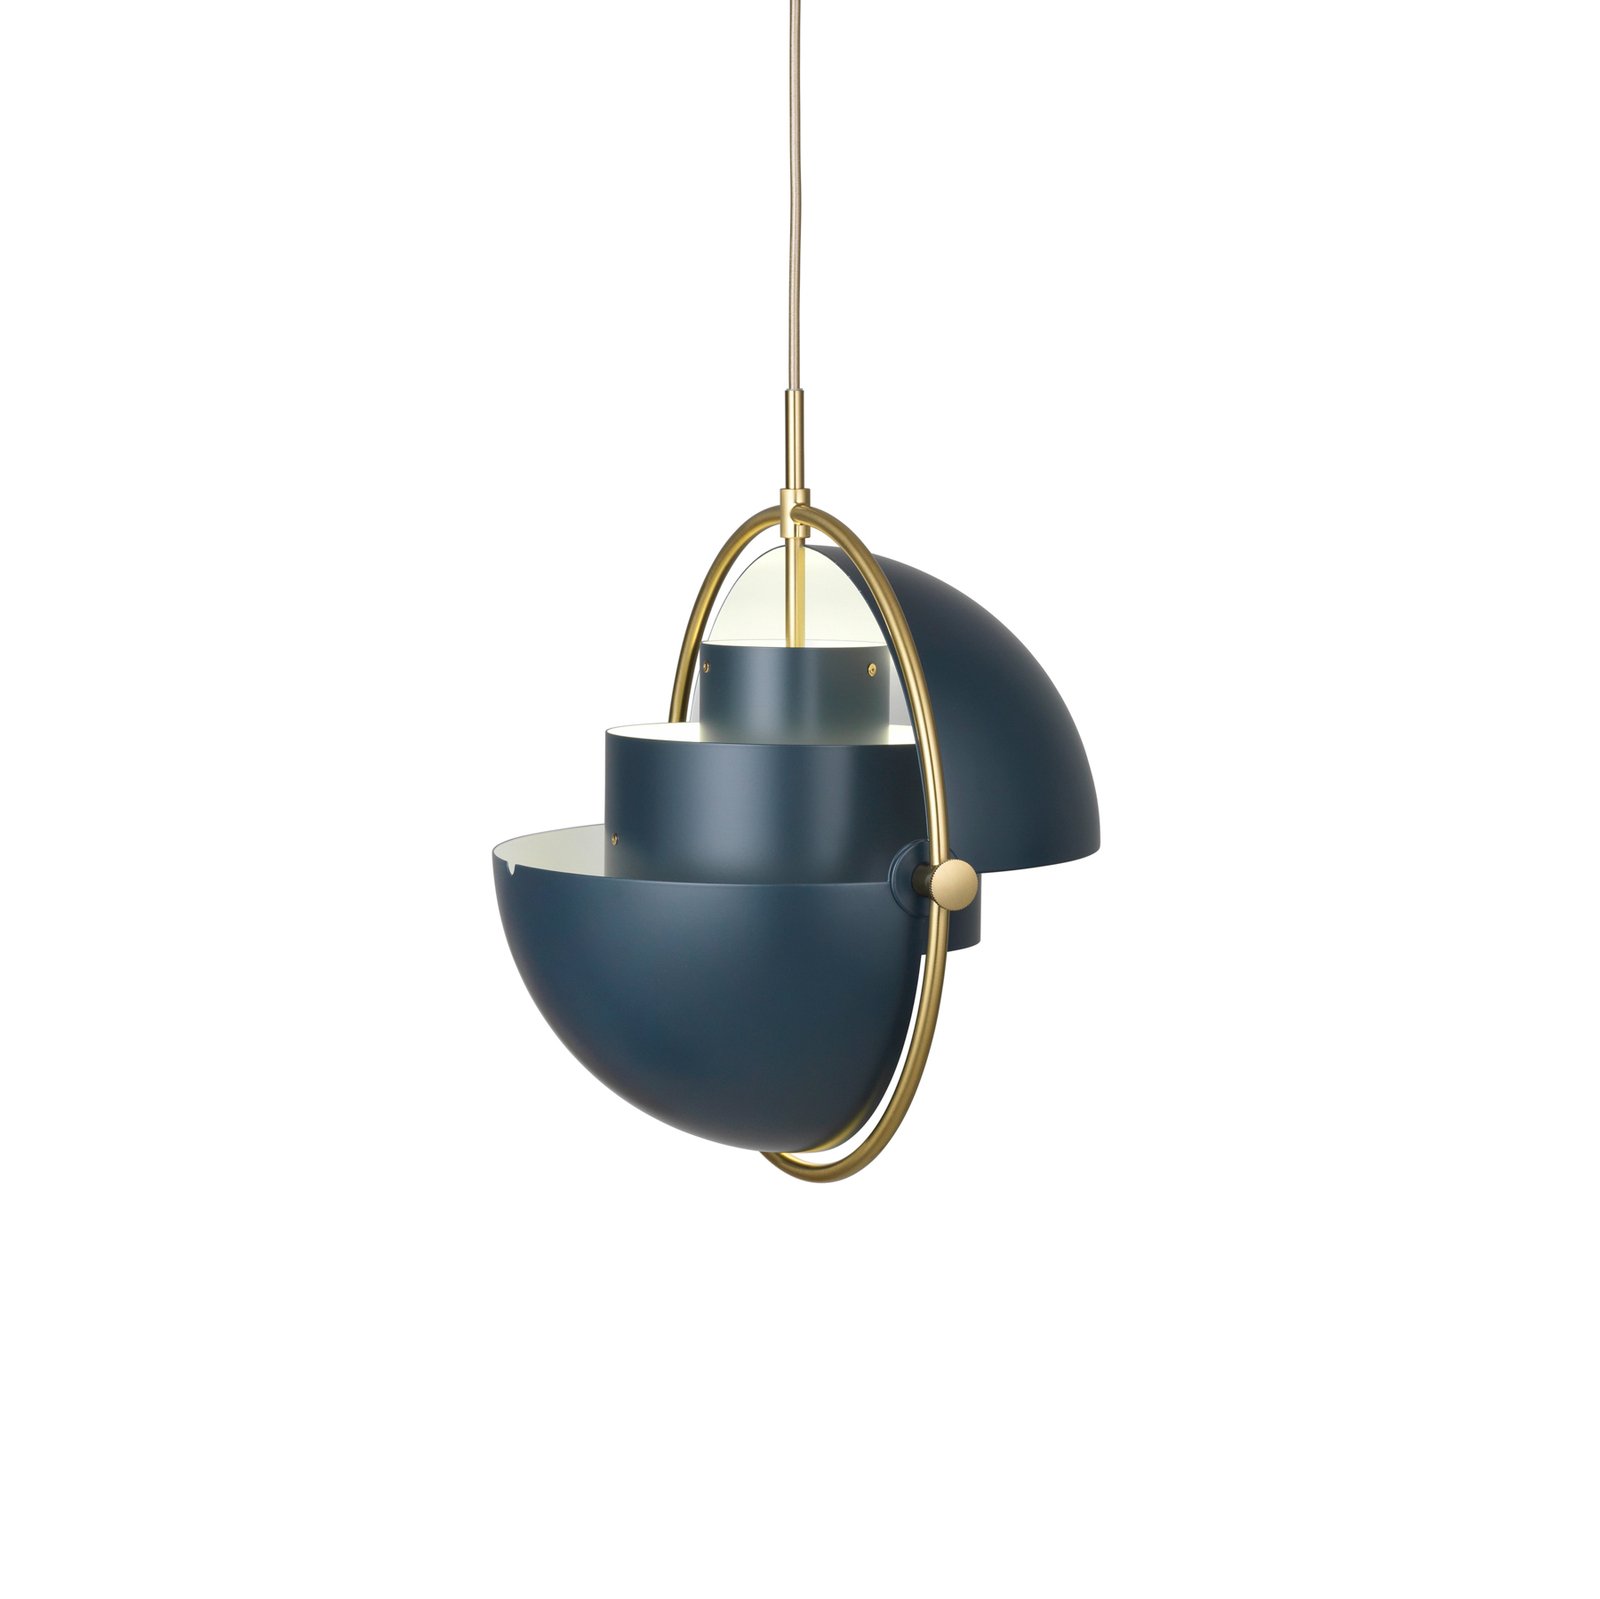 Gubi hanglamp Lite, Ø 36 cm, messing/donkerblauw